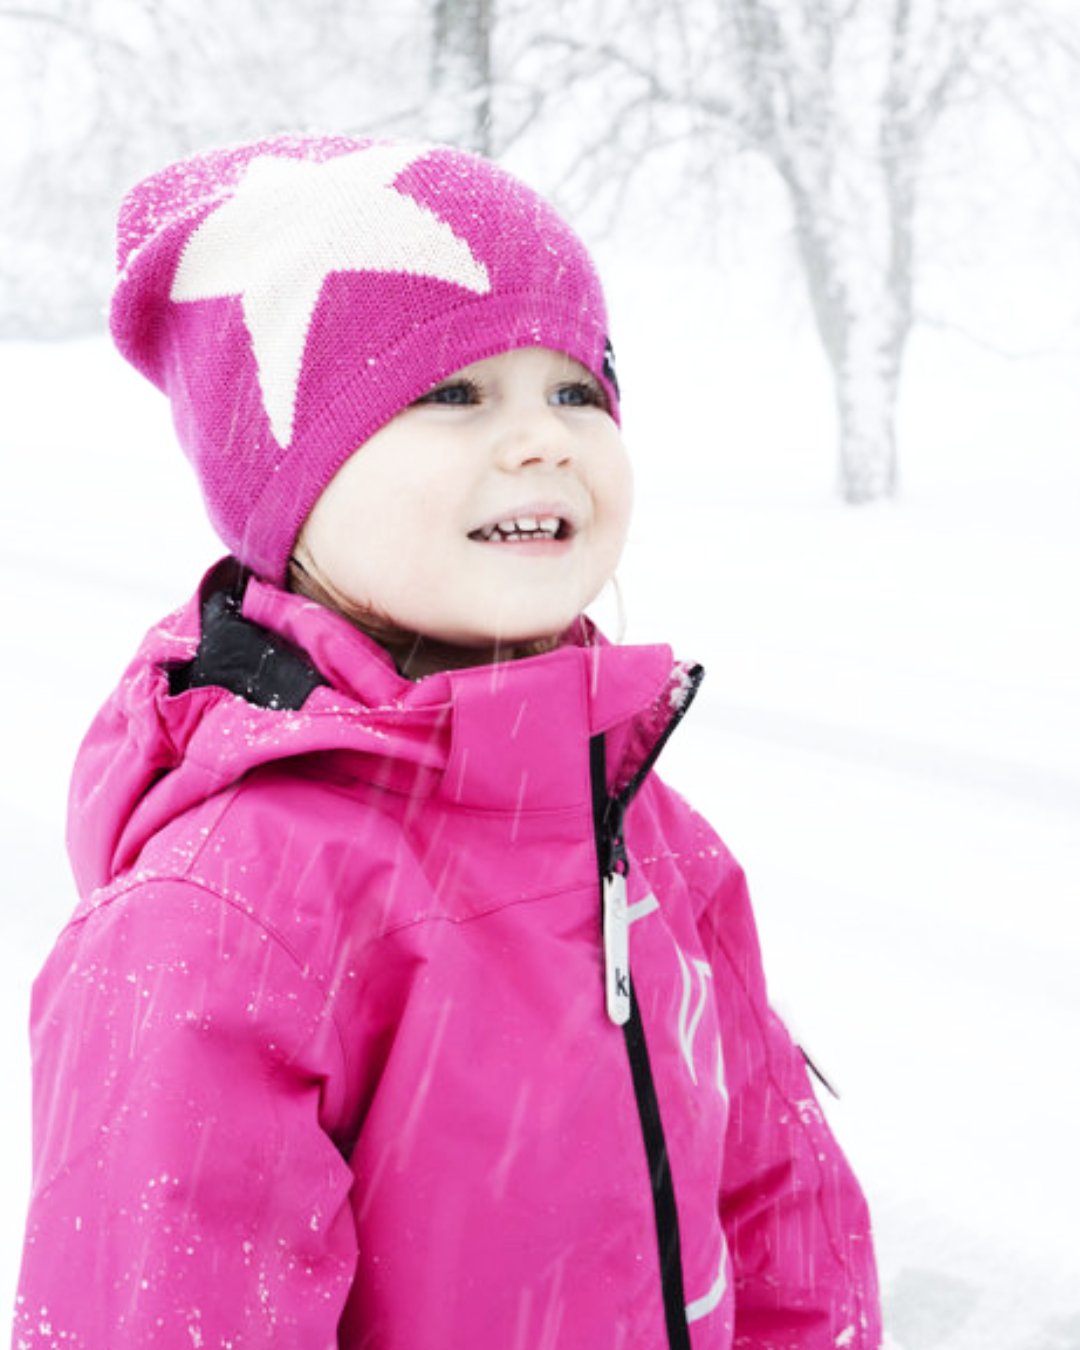 Kind im Schnee mit Strickmütze in Pink